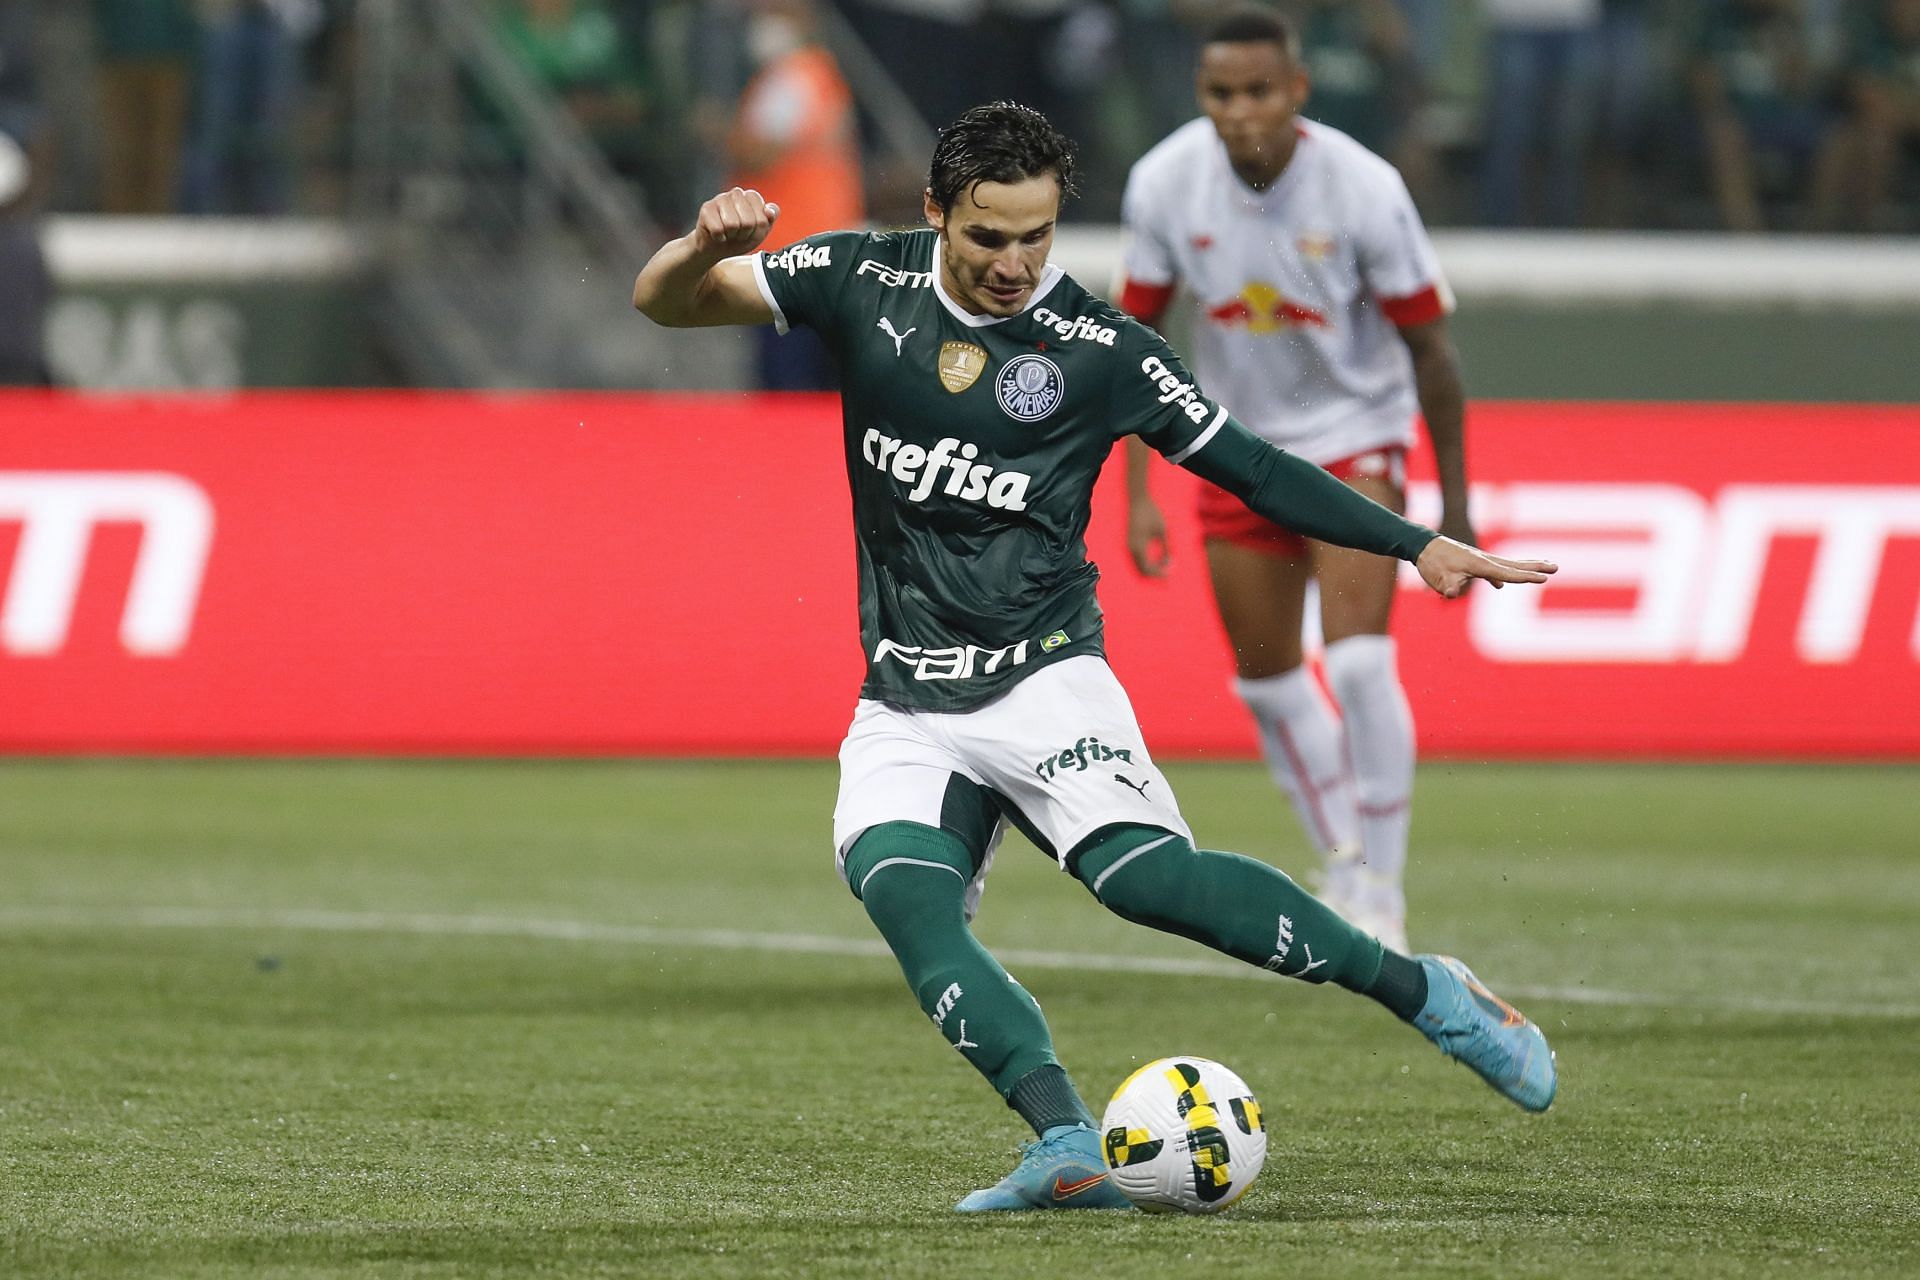 Palmeiras will face Emelec on Wednesday - 2022 Copa Libertadores